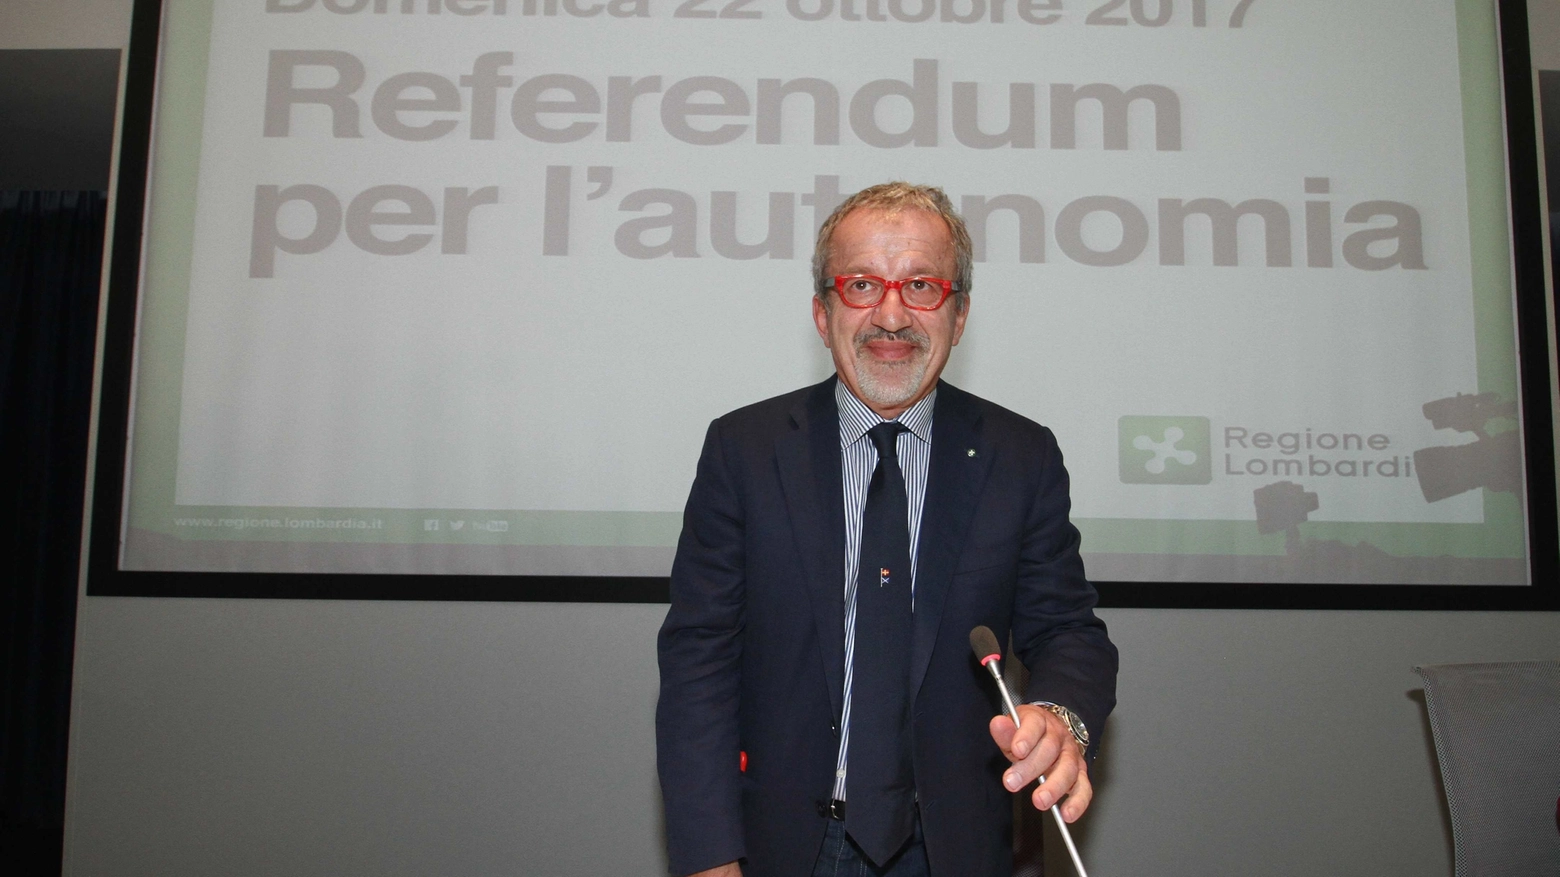 Roberto Maroni commenta i risultati del referendum in Lombardia (Newpress)